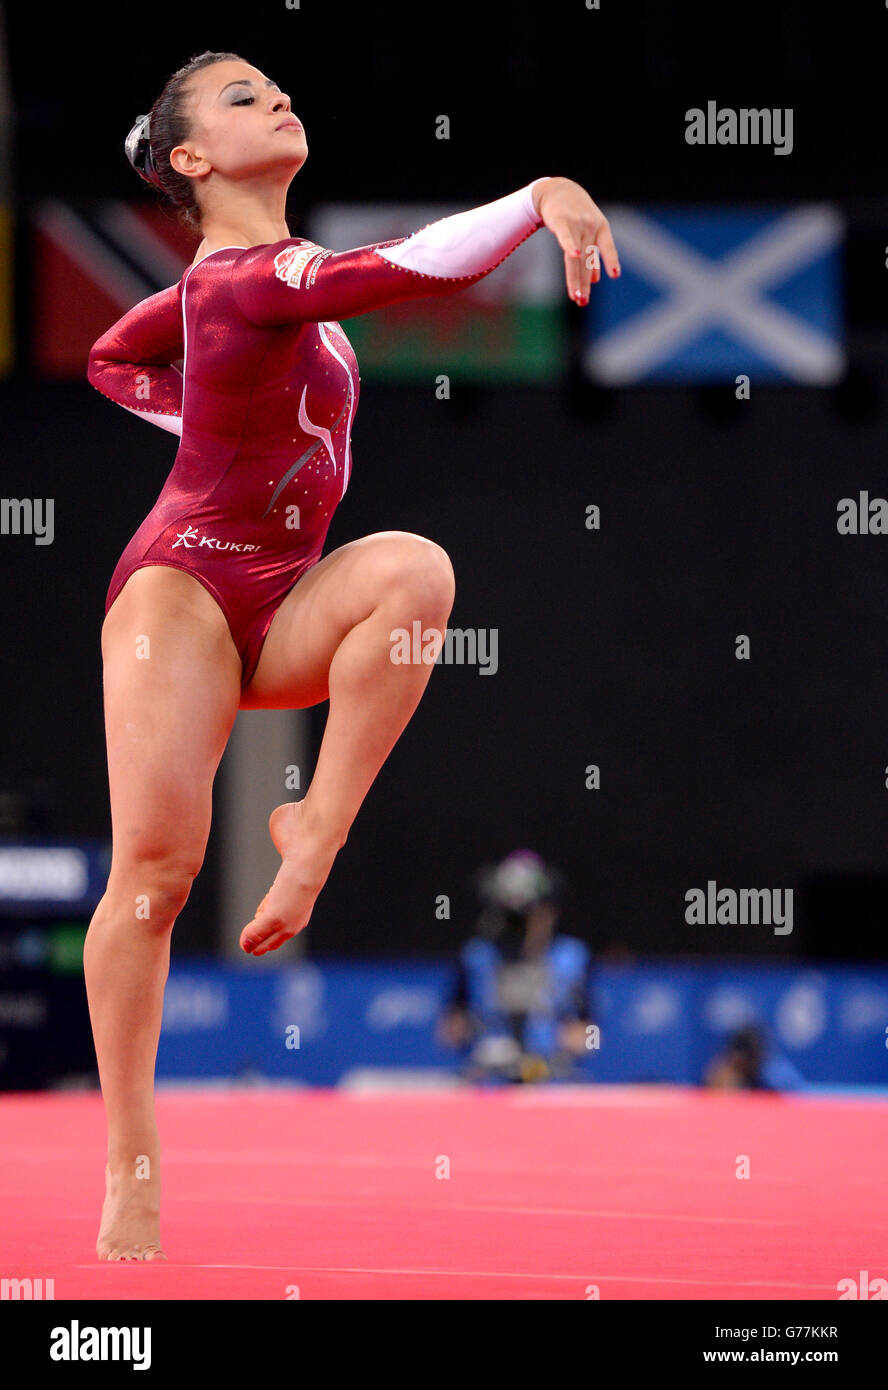 Die Engländerin Claudia Fragapane tritt beim Women's Artistic Gymnastics All-Around Finale im SSE Hydro während der Commonwealth Games 2014 in Glasgow an. Stockfoto